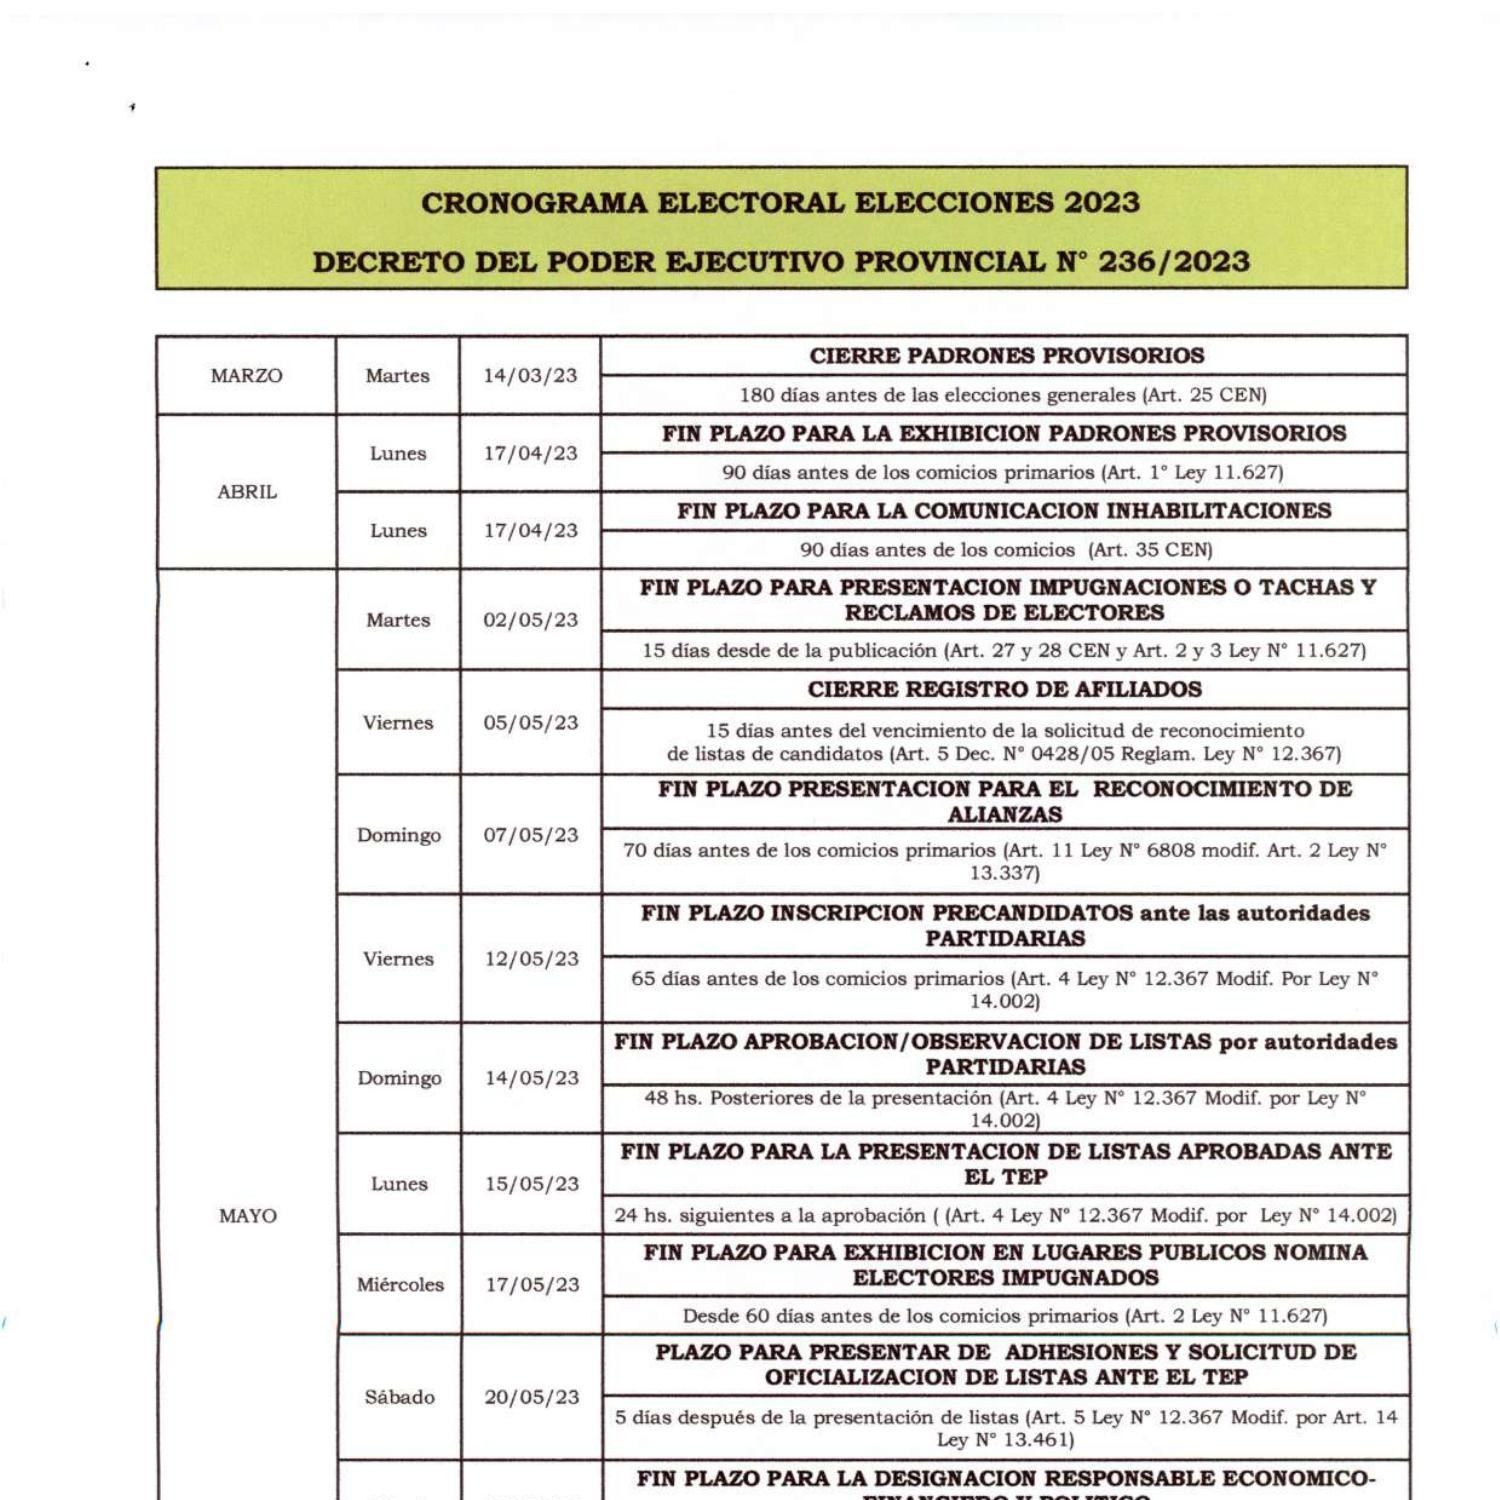 CRONOGRAMA ELECTORAL ELECCIONES 2023 SANTA FE.pdf DocDroid